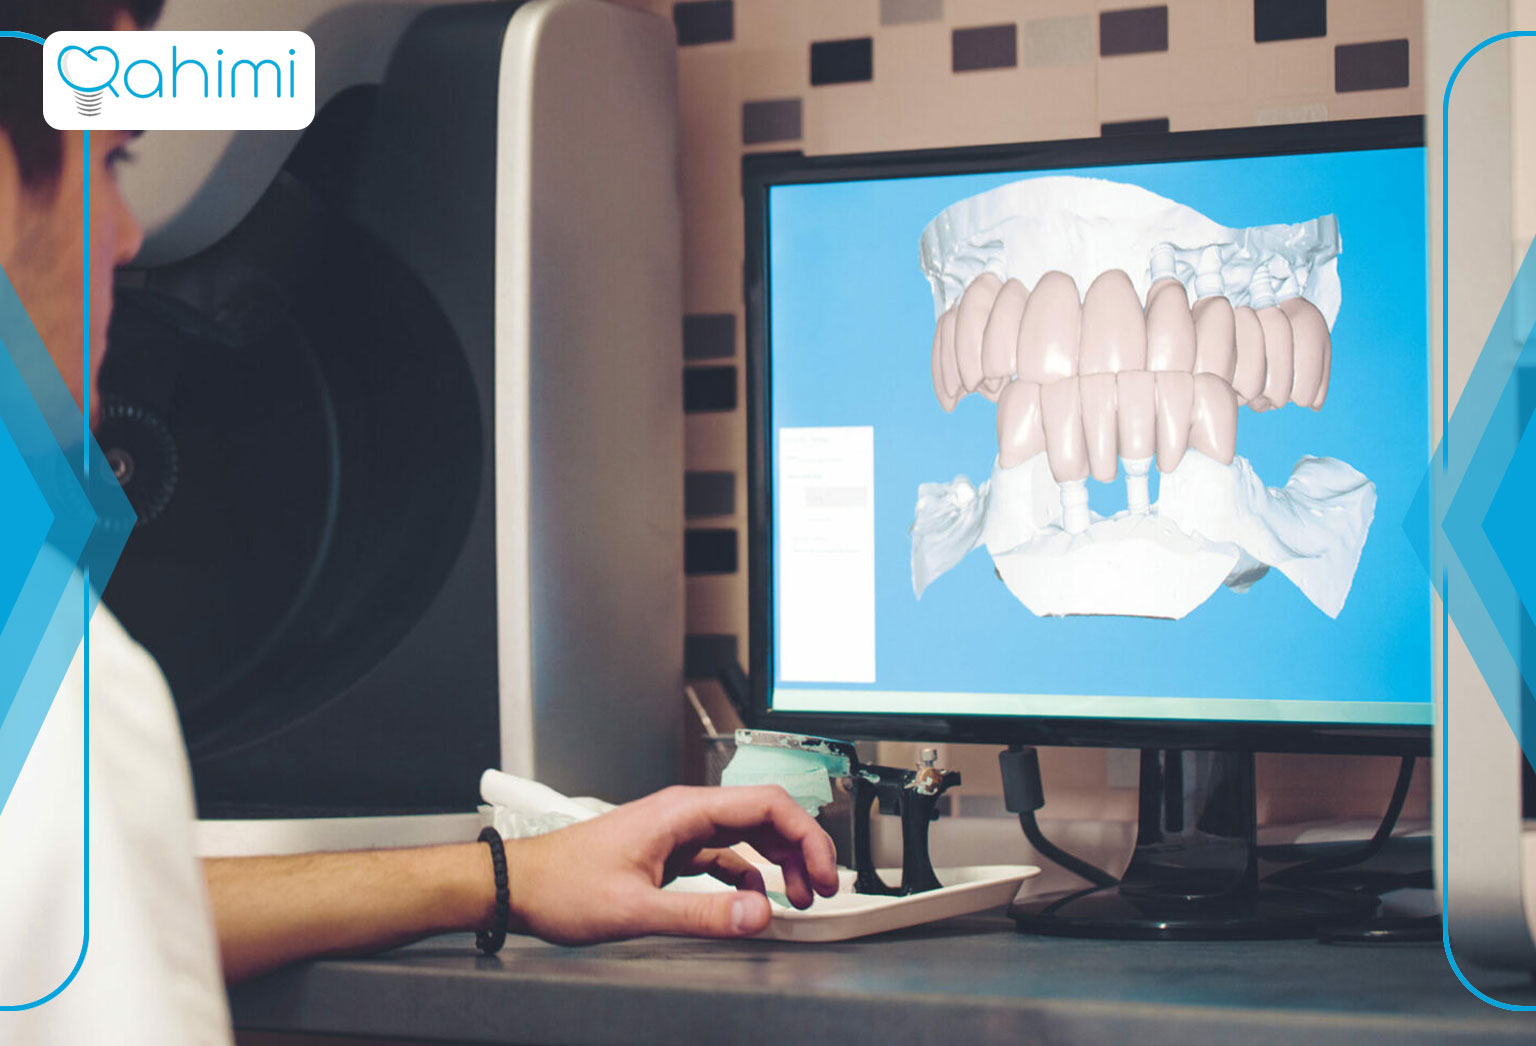 کاربرد دندانپزشکی دیجیتال